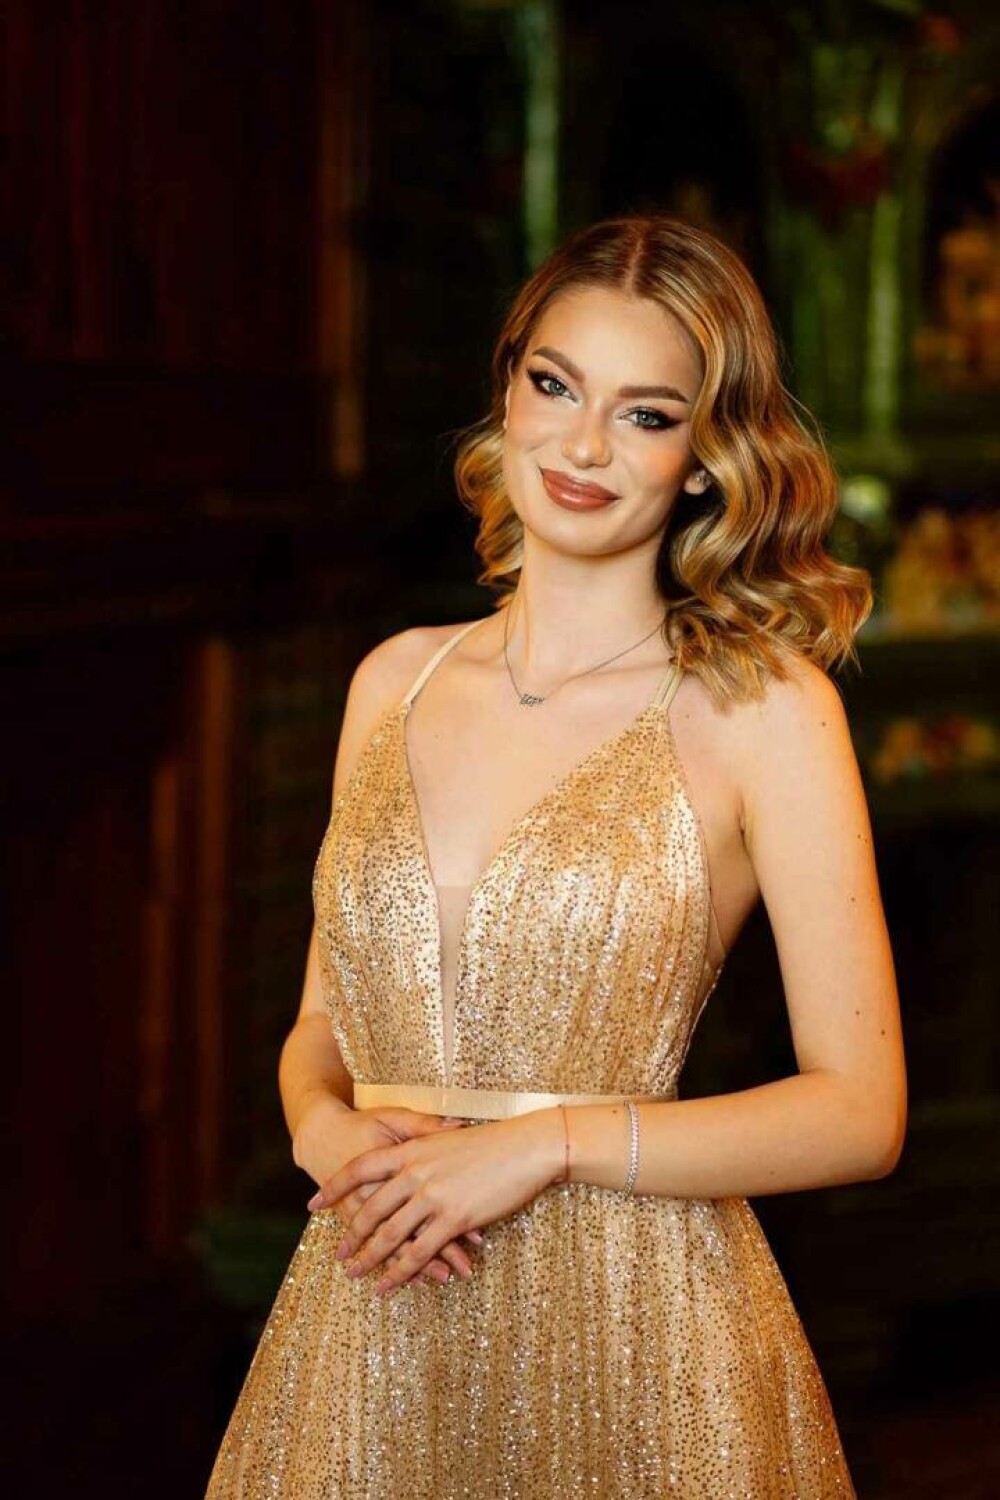 Fiica unui cunoscut politician va reprezenta România la un important concurs de miss. ”Cu bucurie și onoare” GALERIE FOTO - Imaginea 9